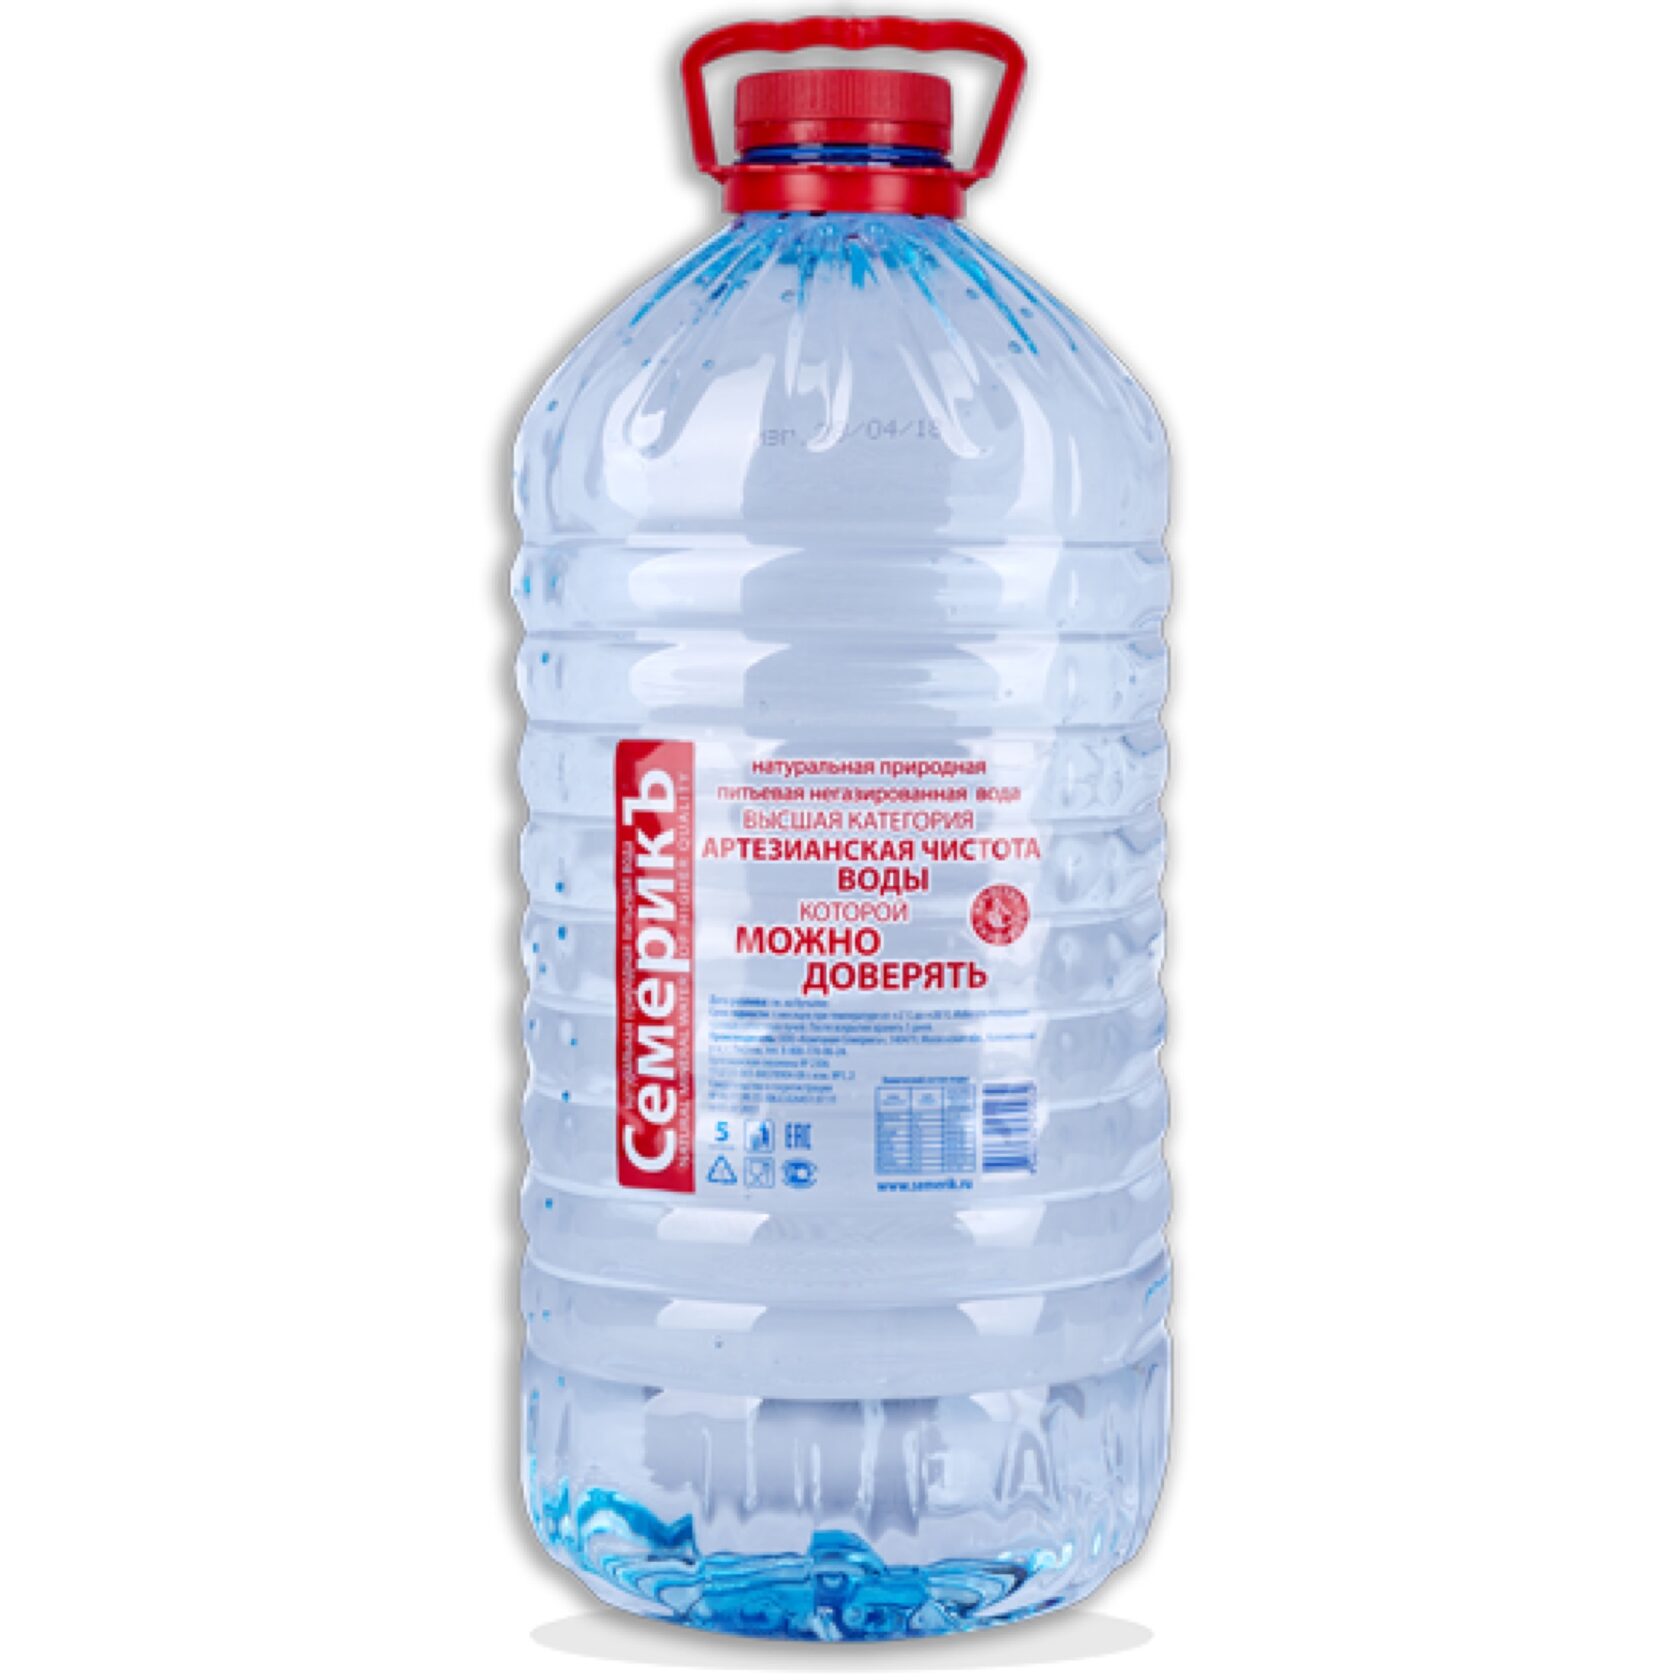 Вода 5 л 19 л. Семерик вода питьевая 5л. Вода питьевая 5л ТМ "Аквастарт". Вода семерик 1,5. Вода питьевая негазированная 5л.